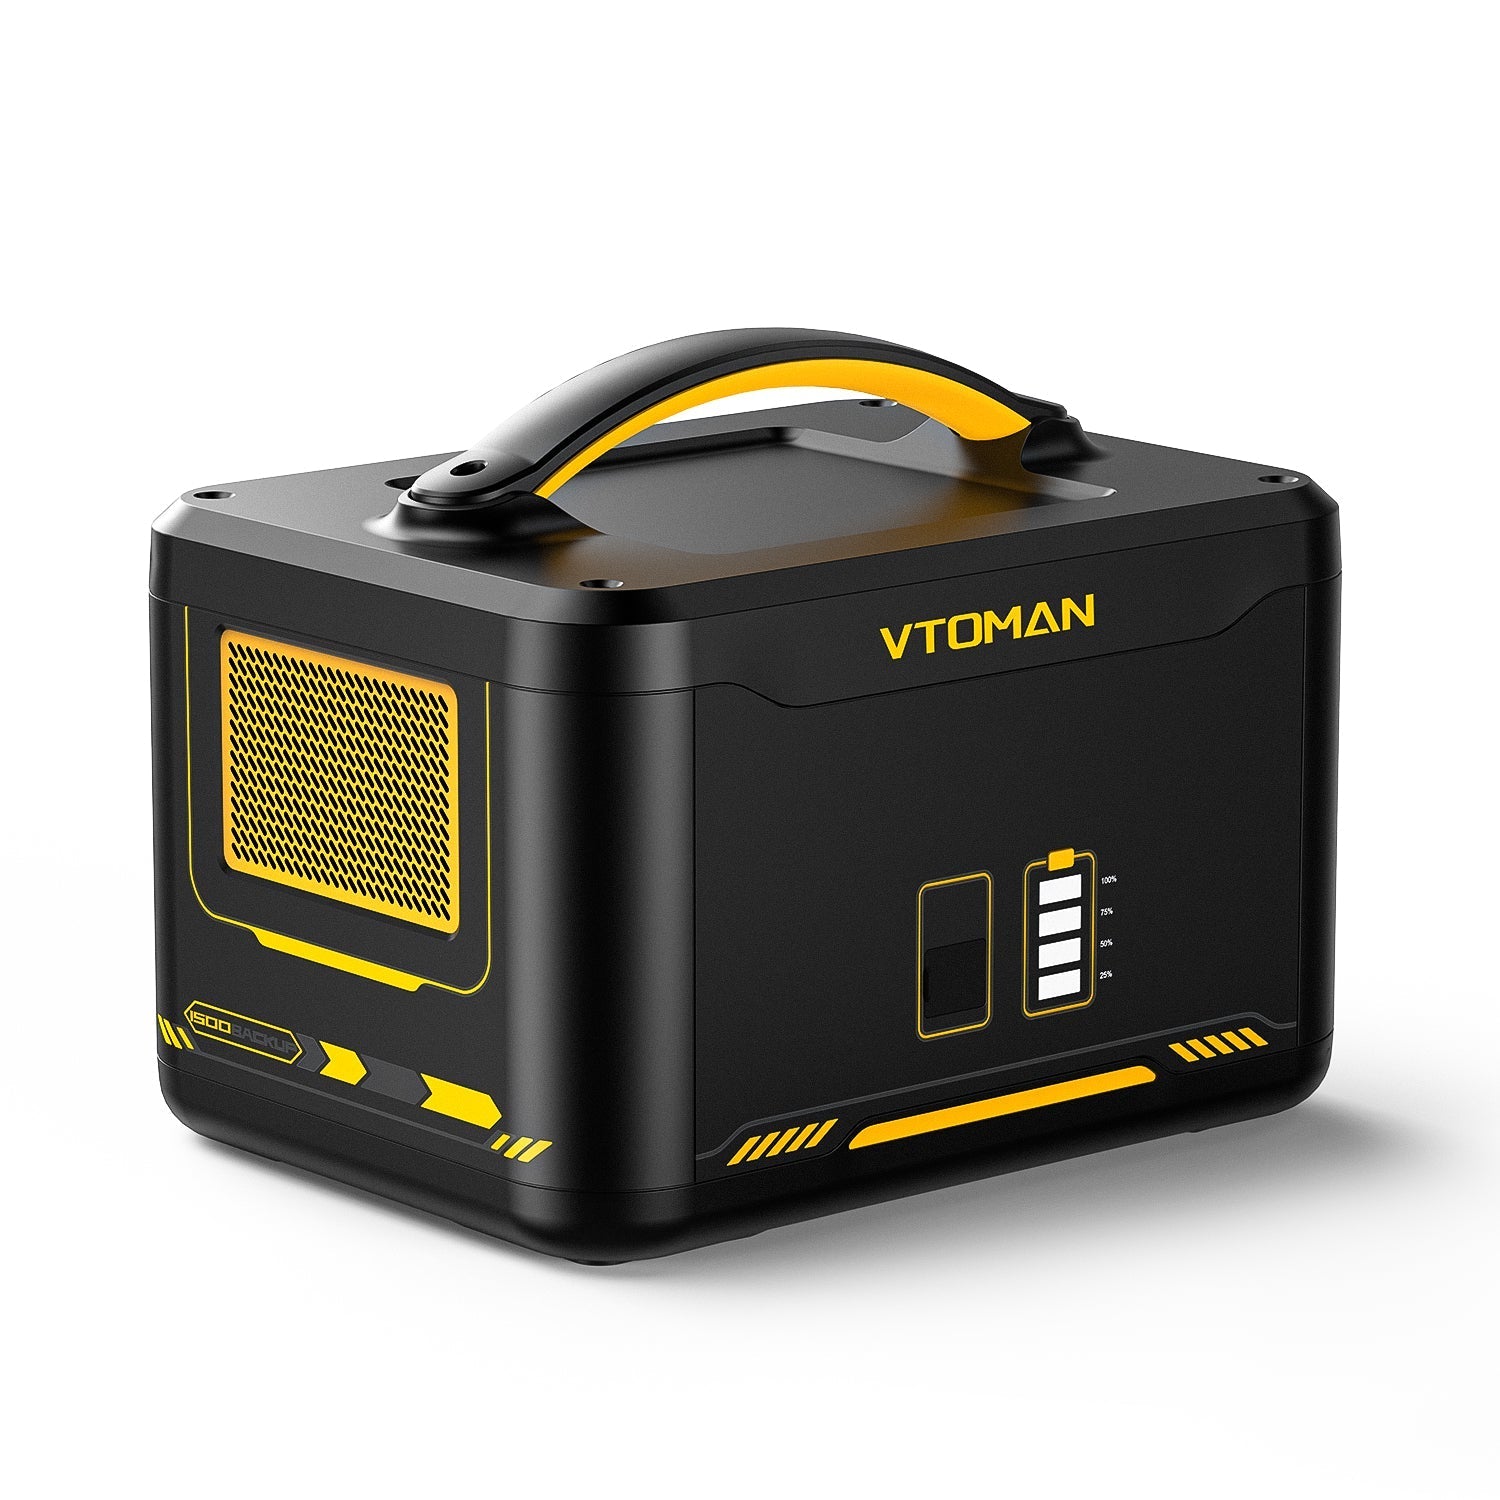 VTOMAN 1548Wh Zusatzbatterie